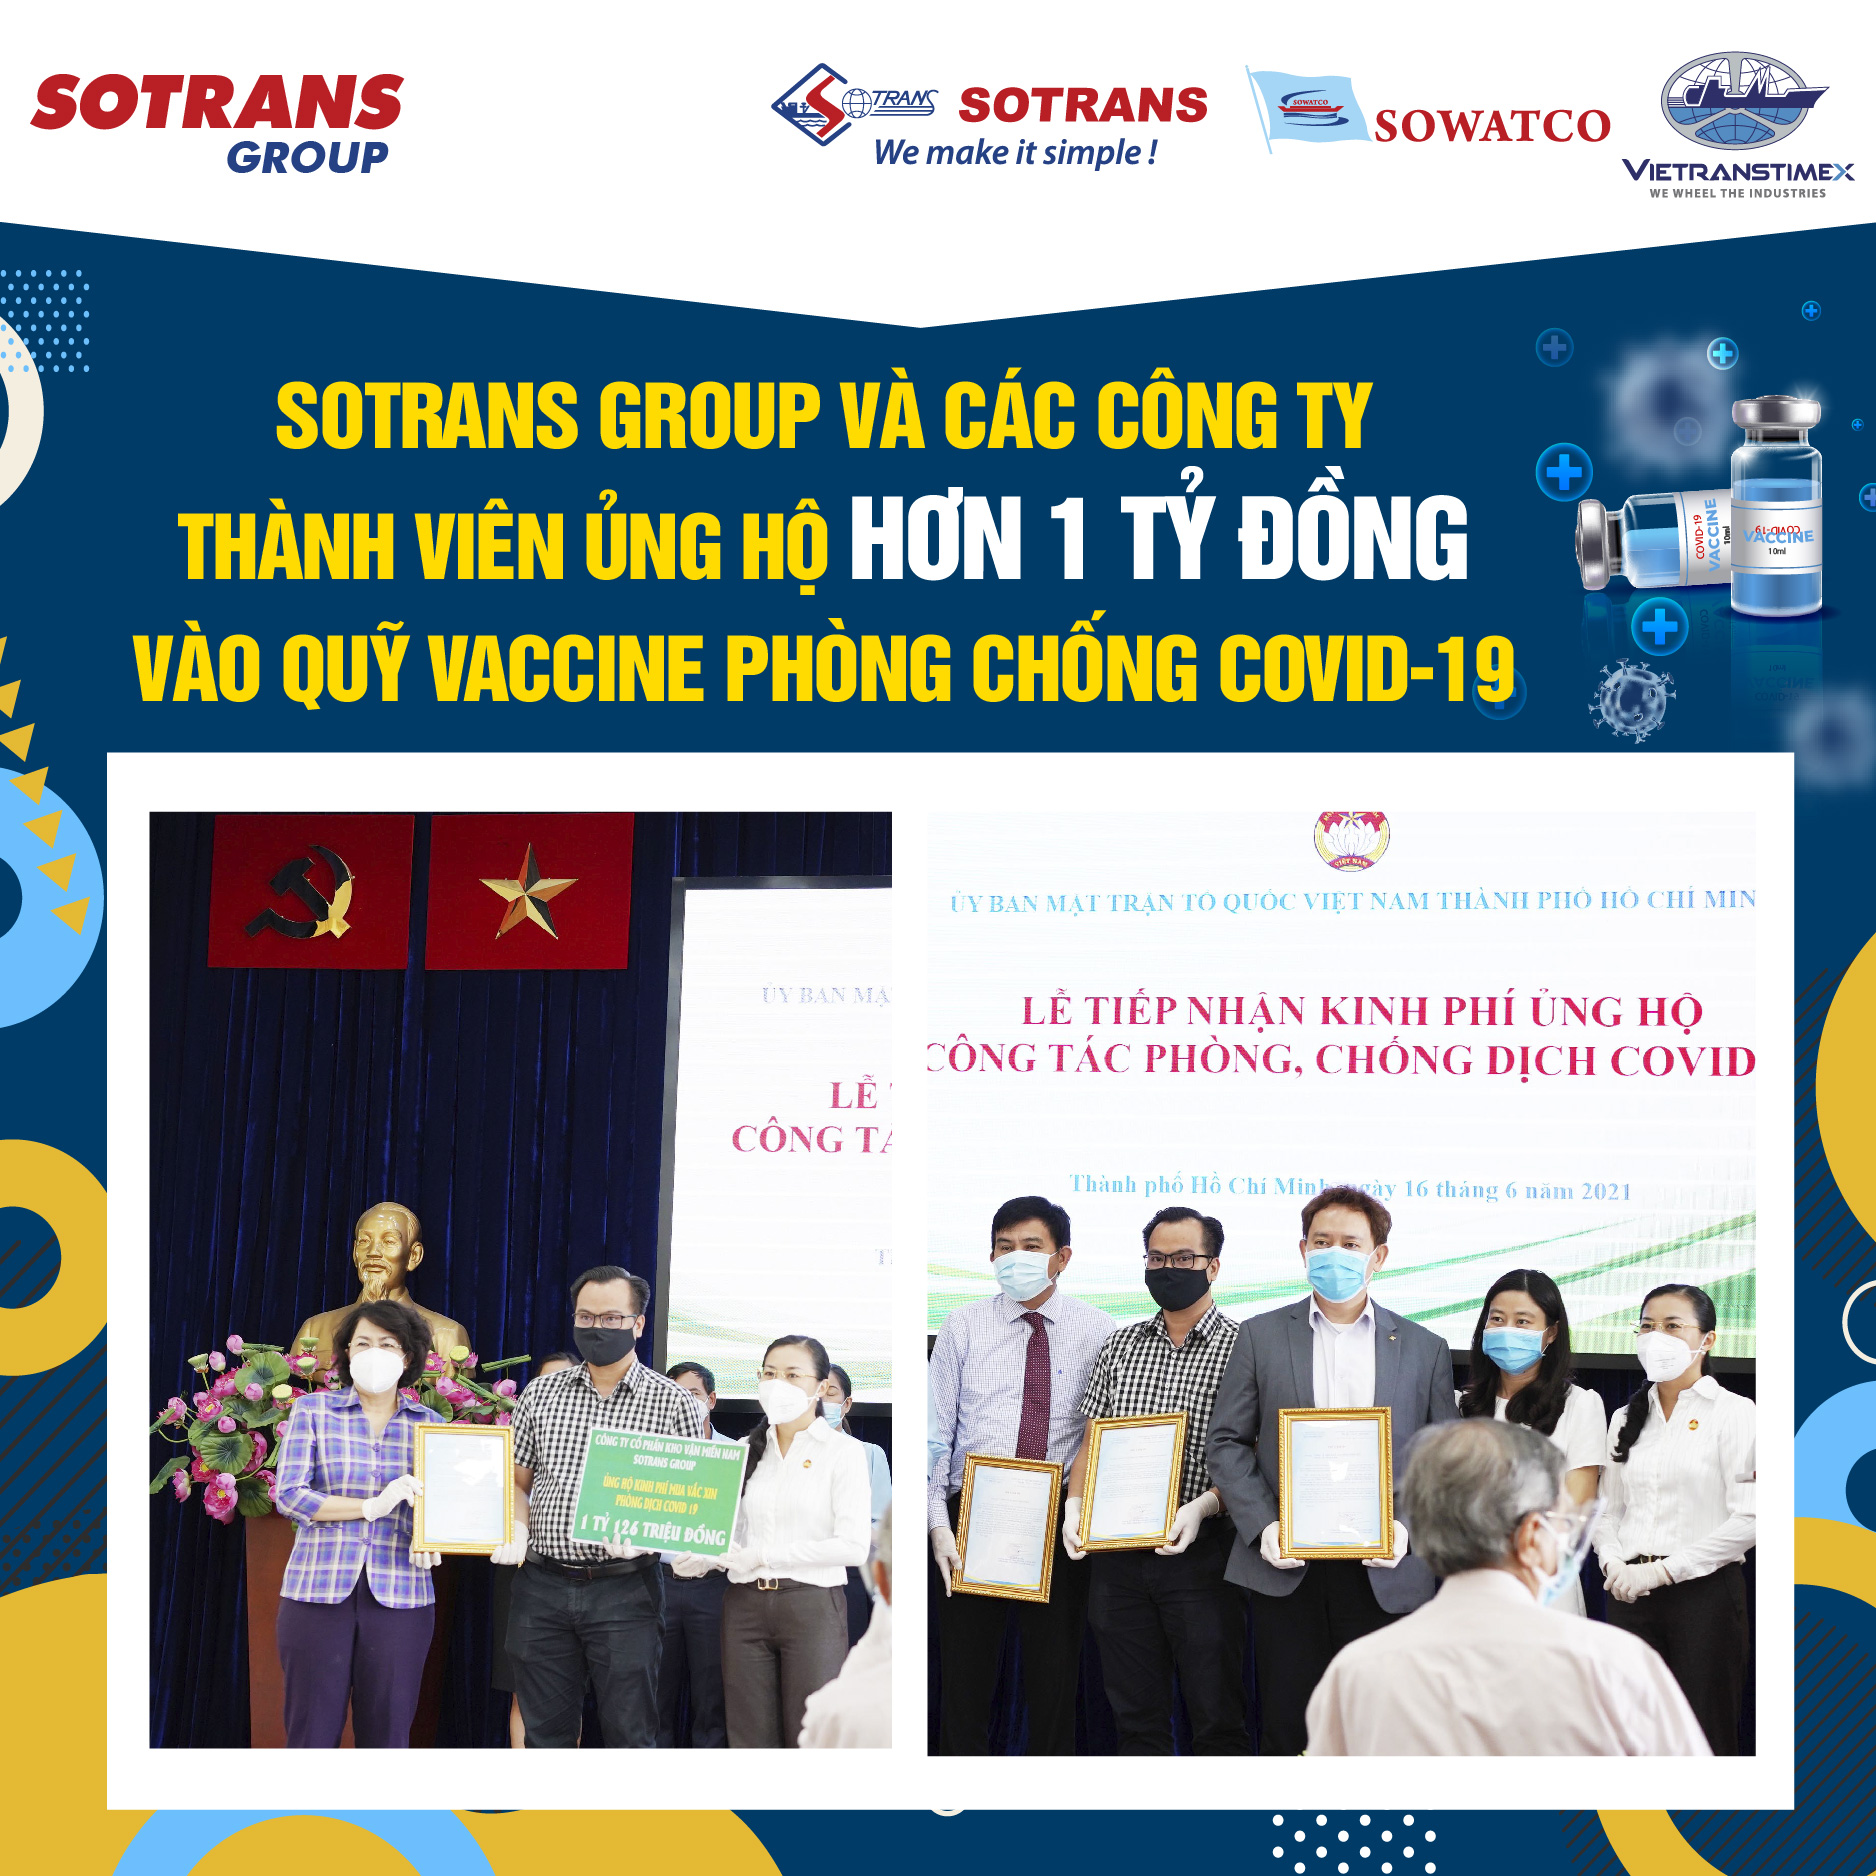 Sotrans Group Và Các Công Ty Thành Viên Ủng Hộ Hơn 1 Tỷ Đồng Vào Quỹ Vaccine Phòng Chống Covid-19